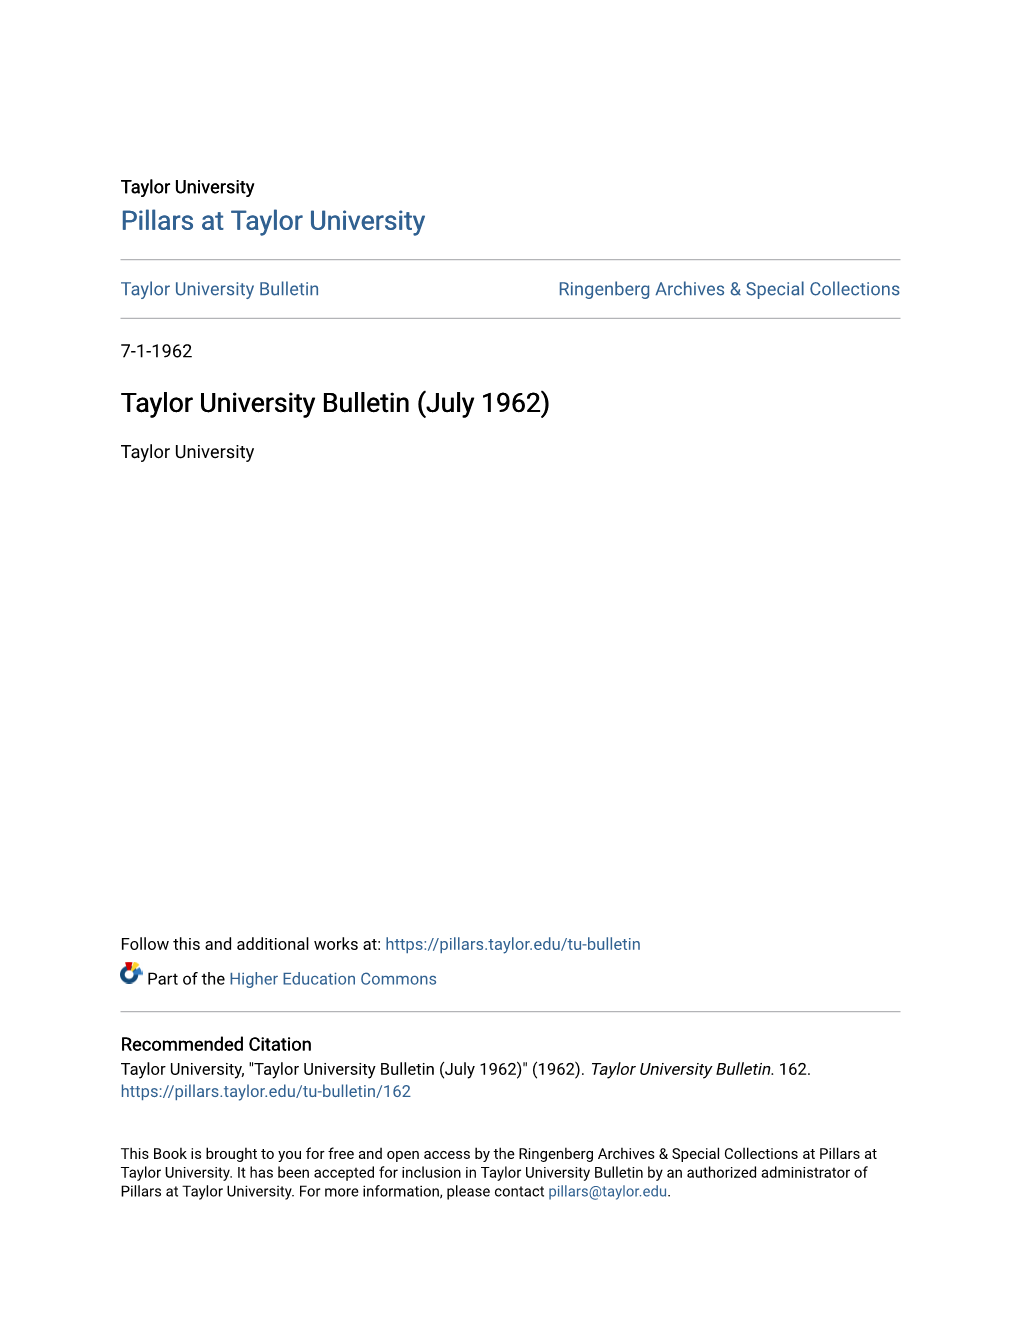 Taylor University Bulletin (July 1962)